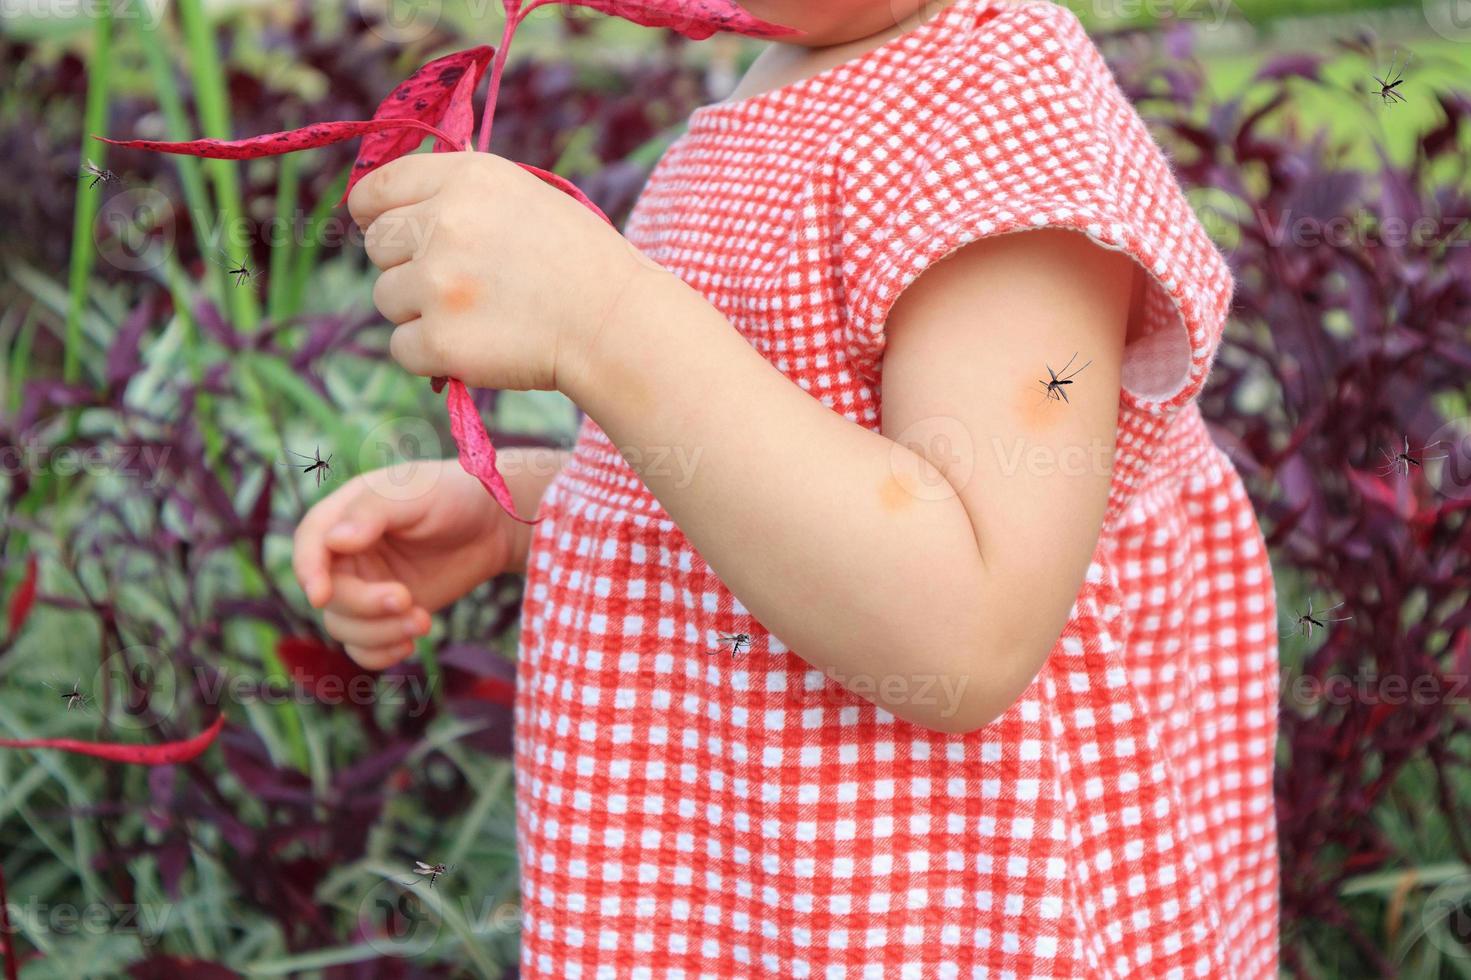 linda niña asiática tiene erupción cutánea y alergia por picadura de mosquito y chupa sangre mientras juega al aire libre foto